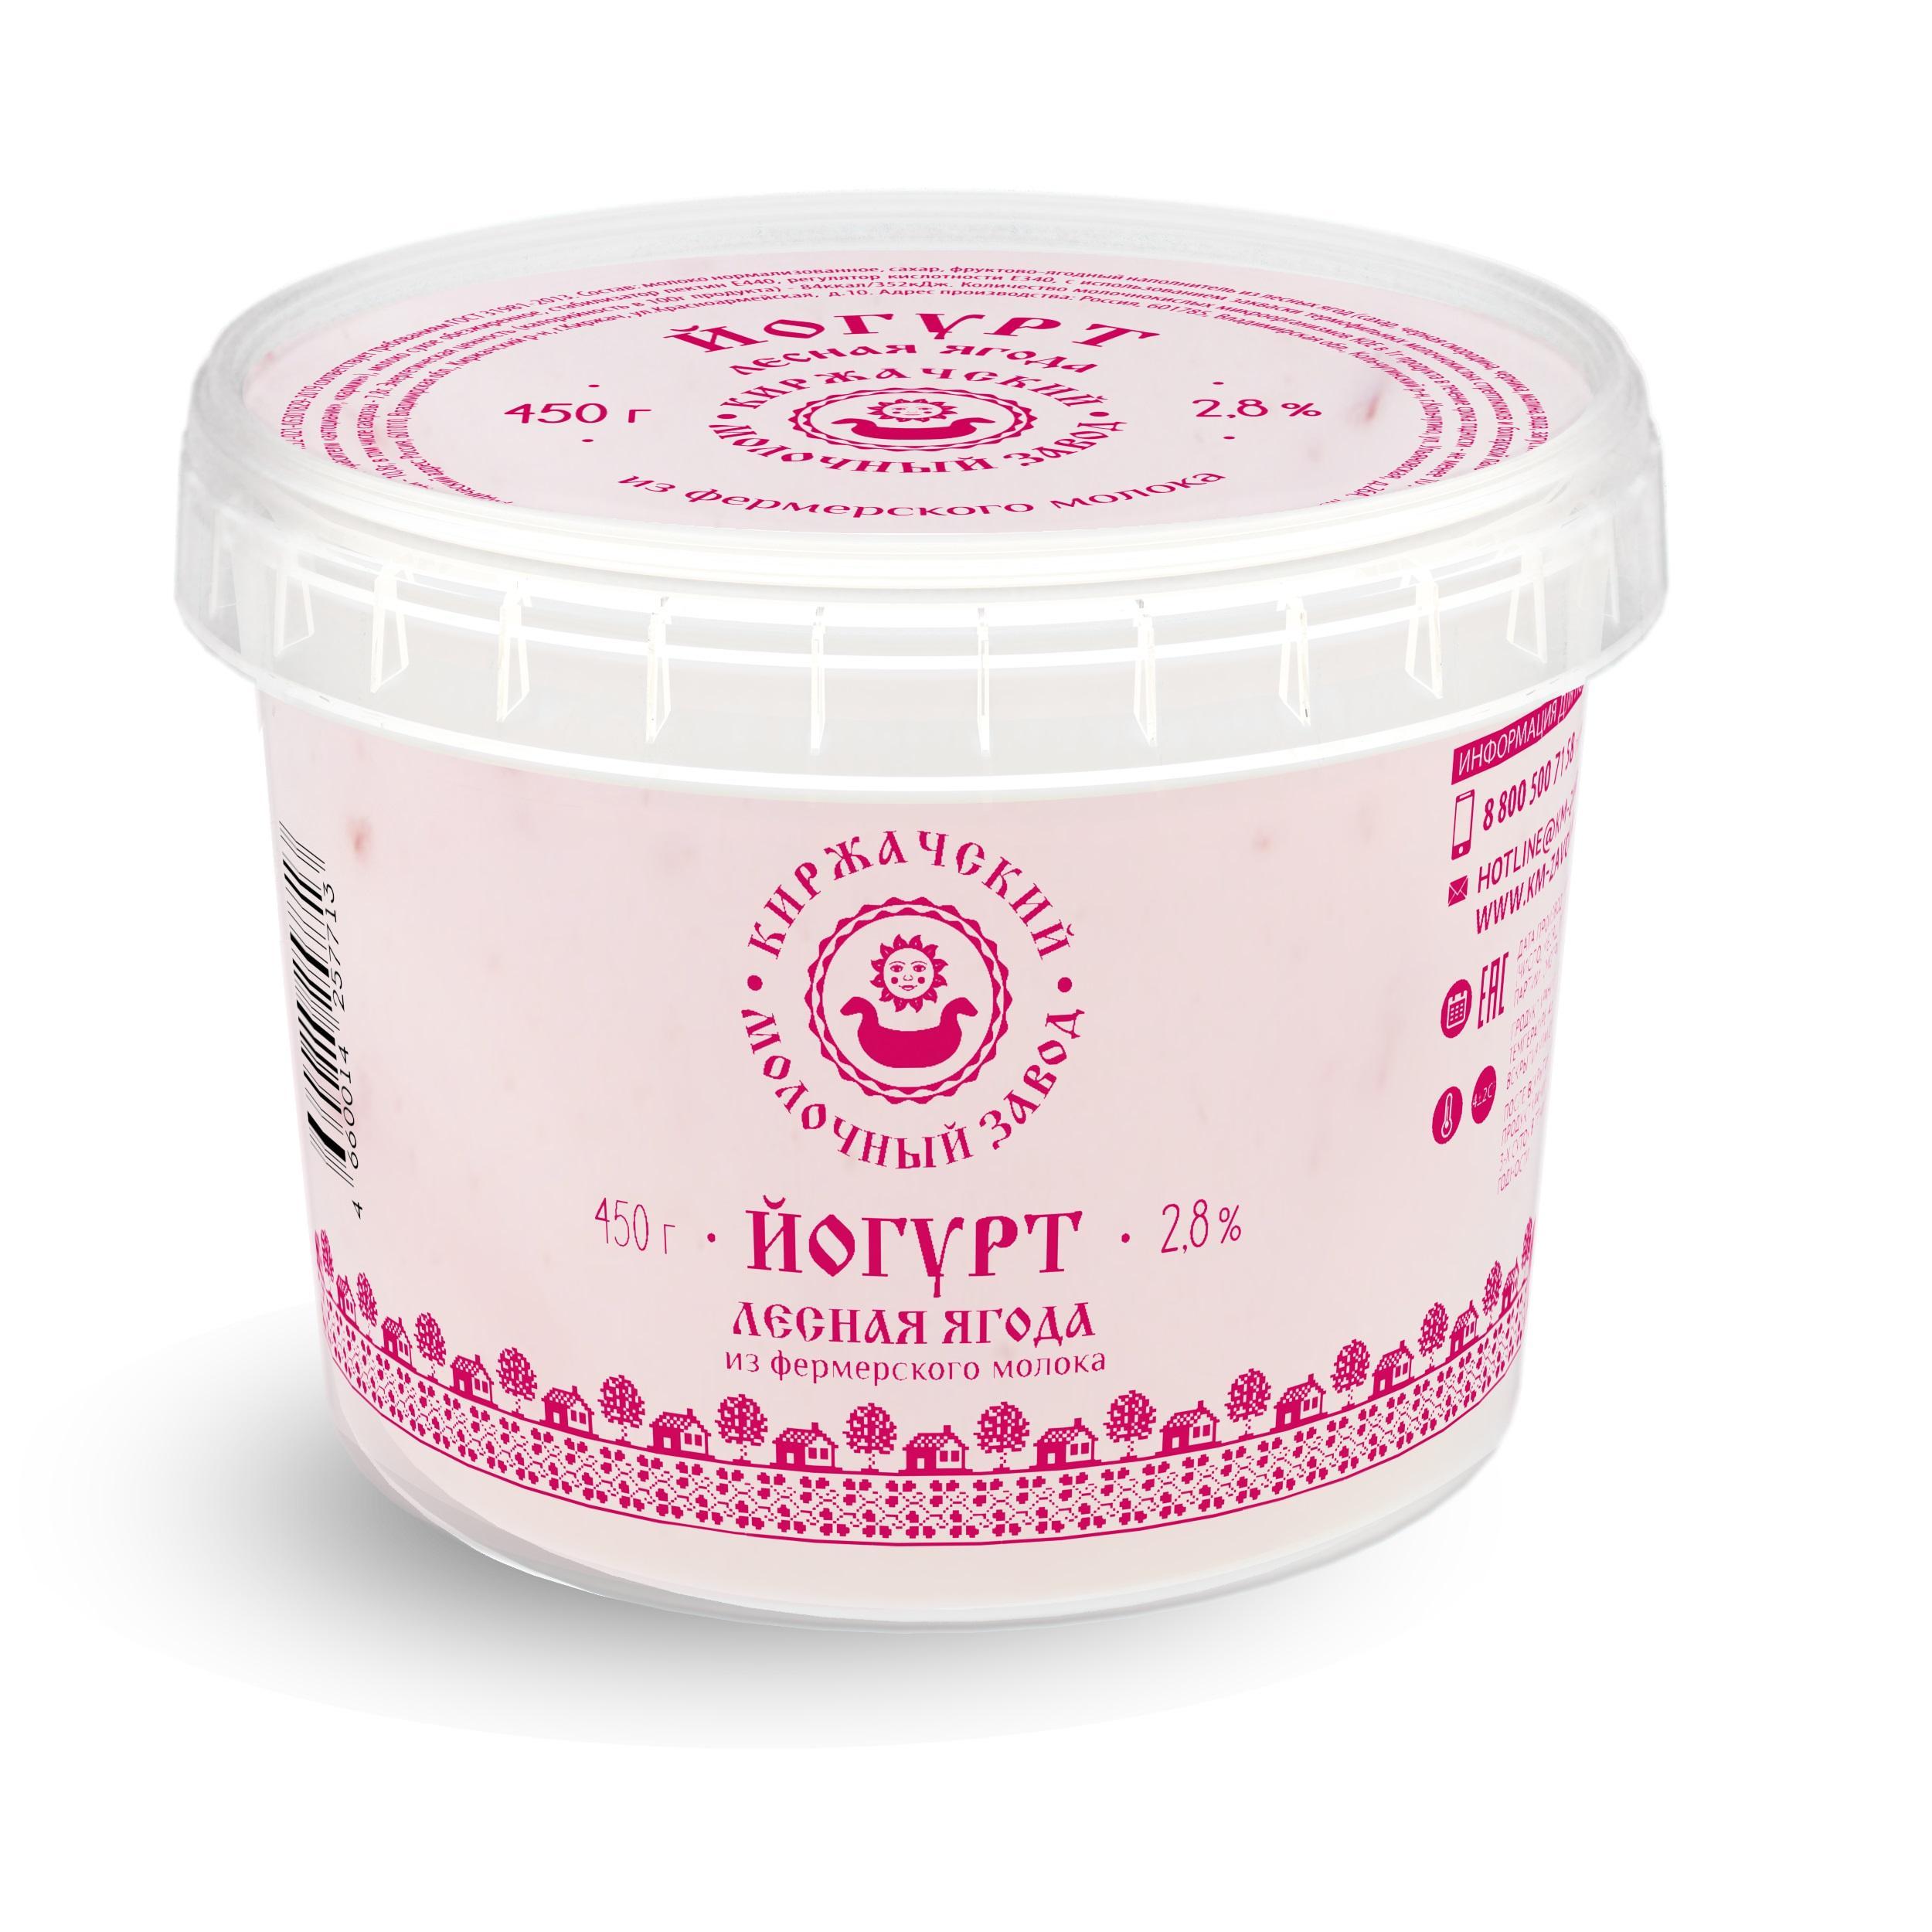 Йогурт Киржачский маслосырзавод лесная ягода, мдж 2,8%, 450 гр., ПЭТ